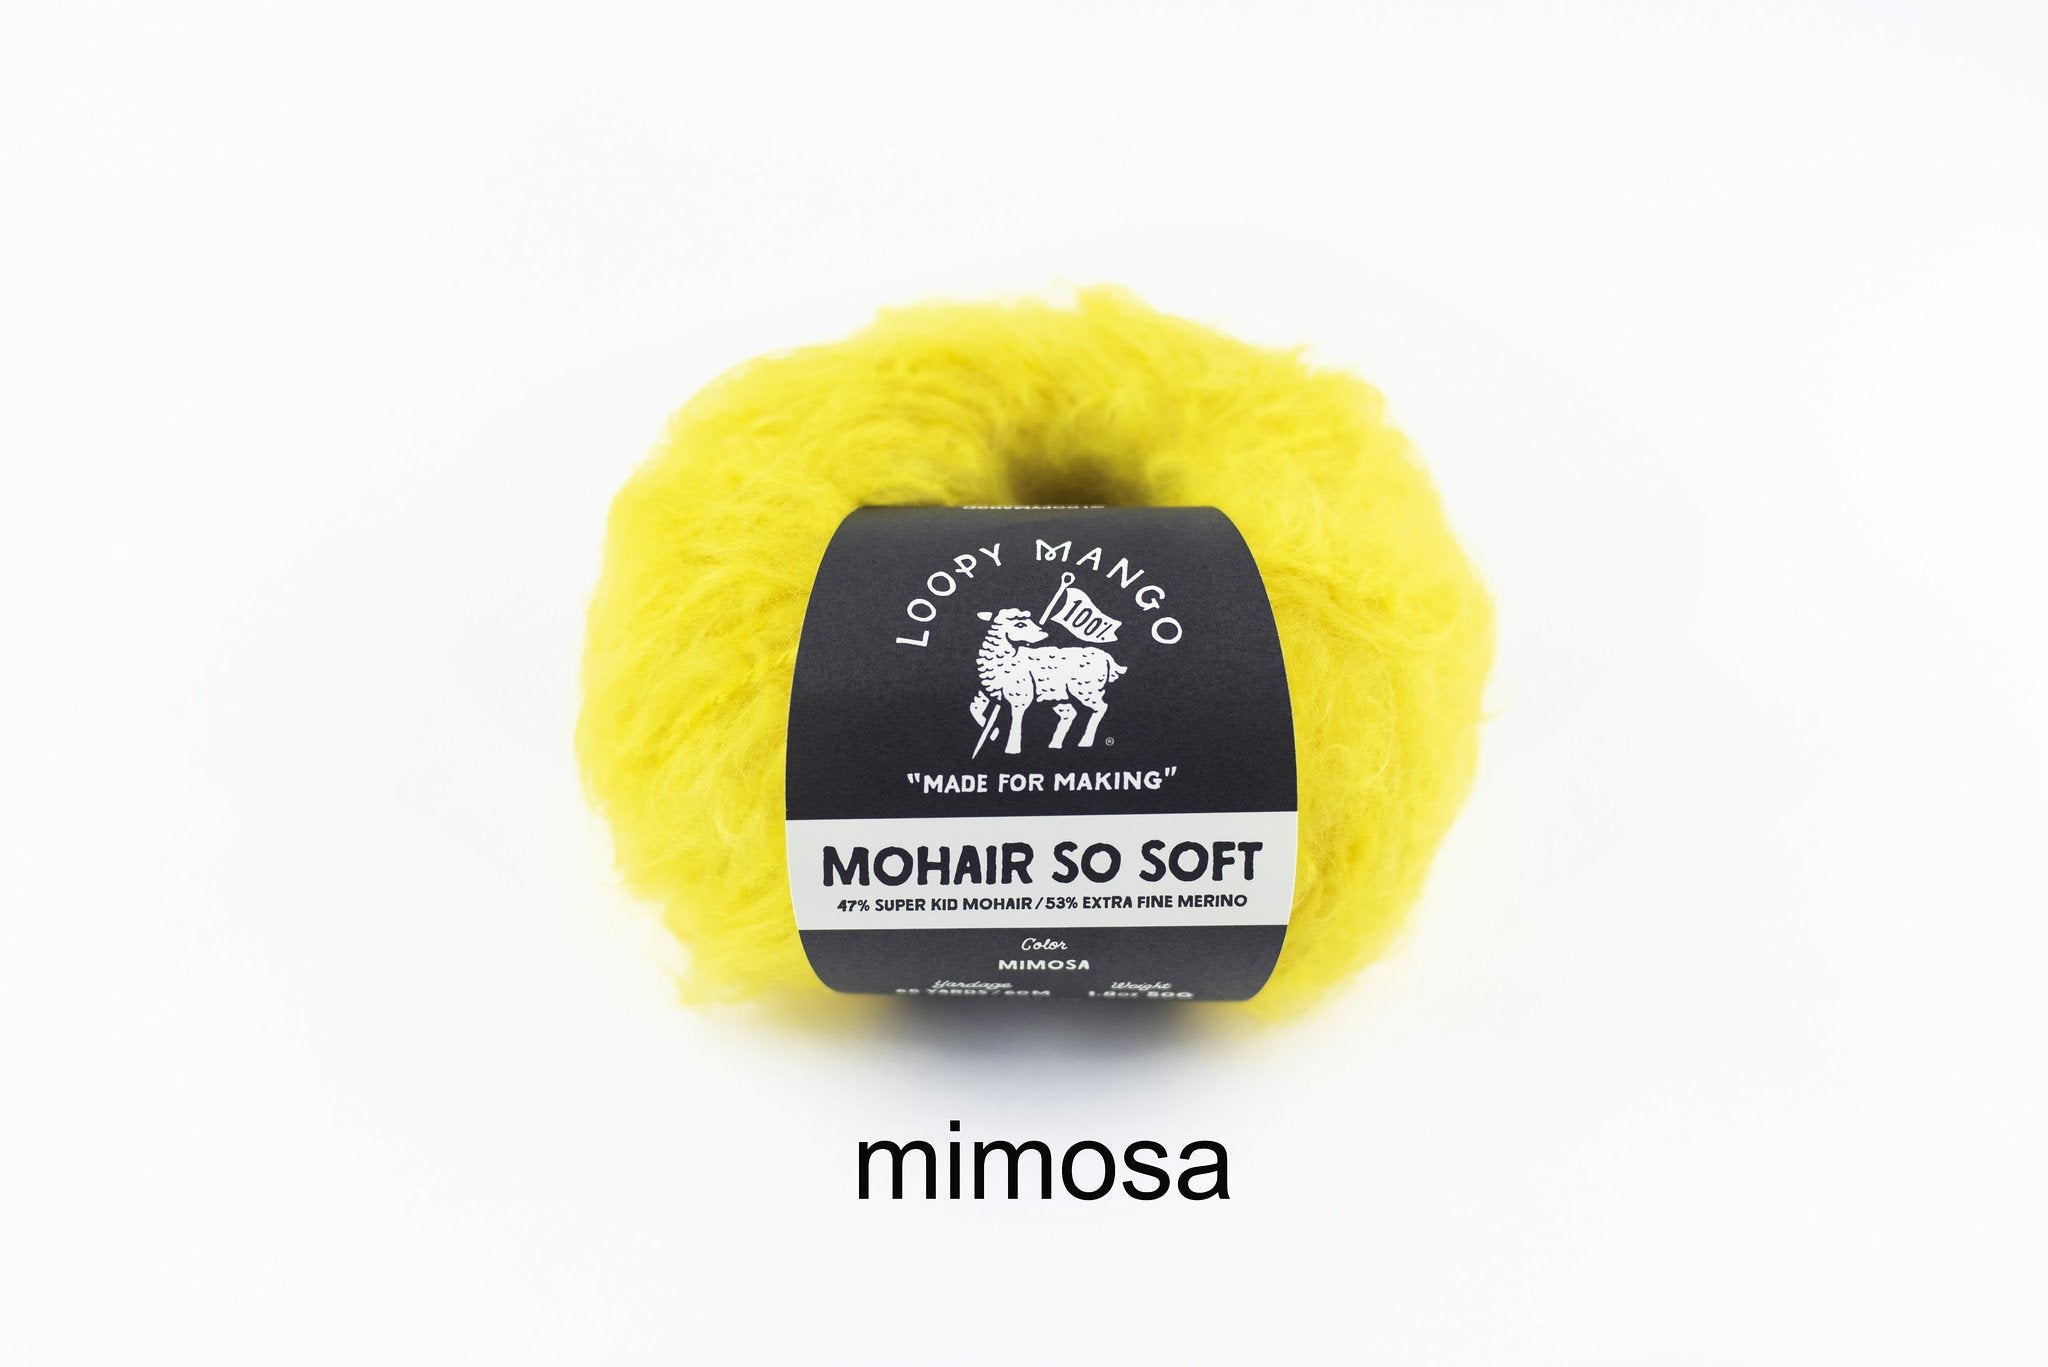 Mimosa_t_1024x1024_2x_bcdf0932-1dfd-432e-9614-91c63e692d93.jpg